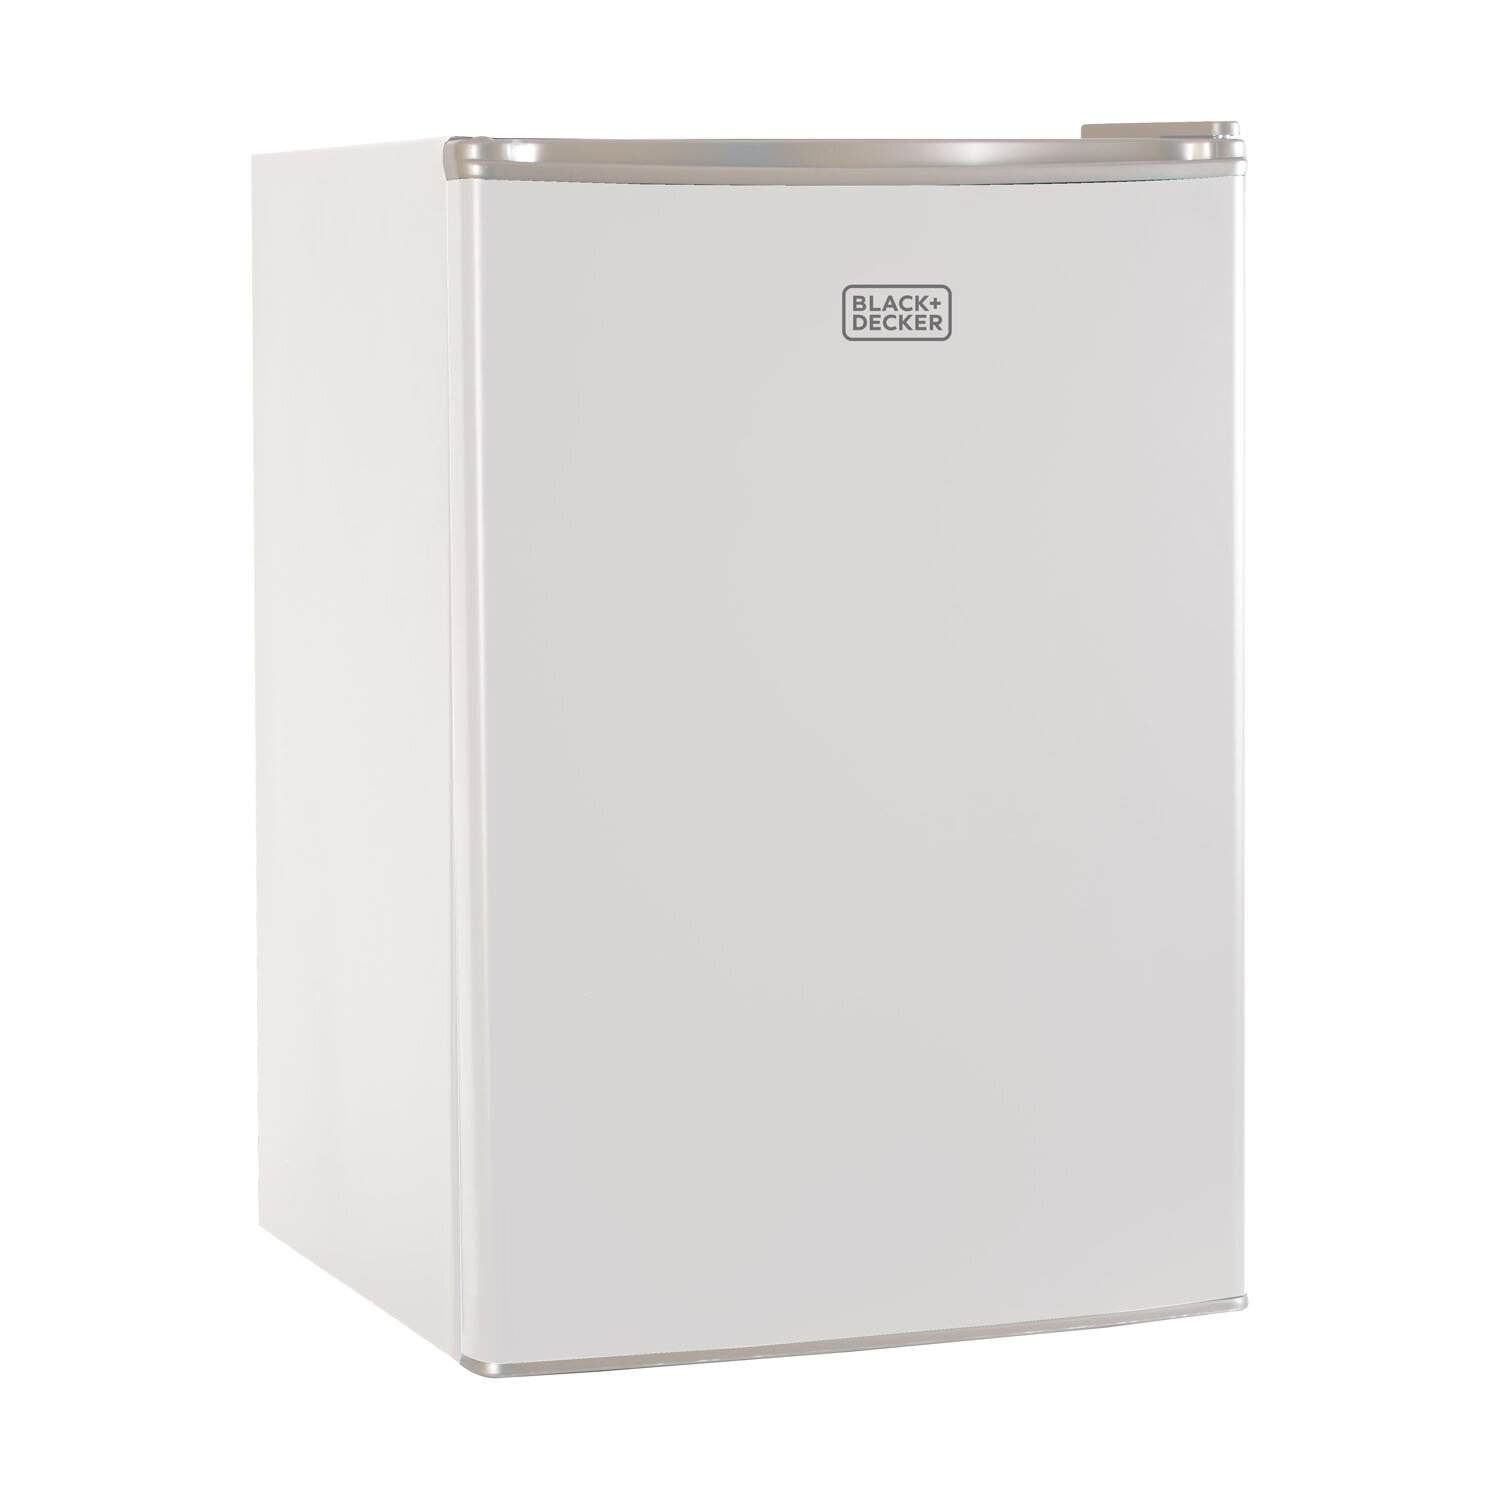 https://assets.wfcdn.com/im/93568371/compr-r85/3239/32397528/blackdecker-bcrk-series-25-cubic-feet-freestanding-mini-fridge-with-freezer.jpg